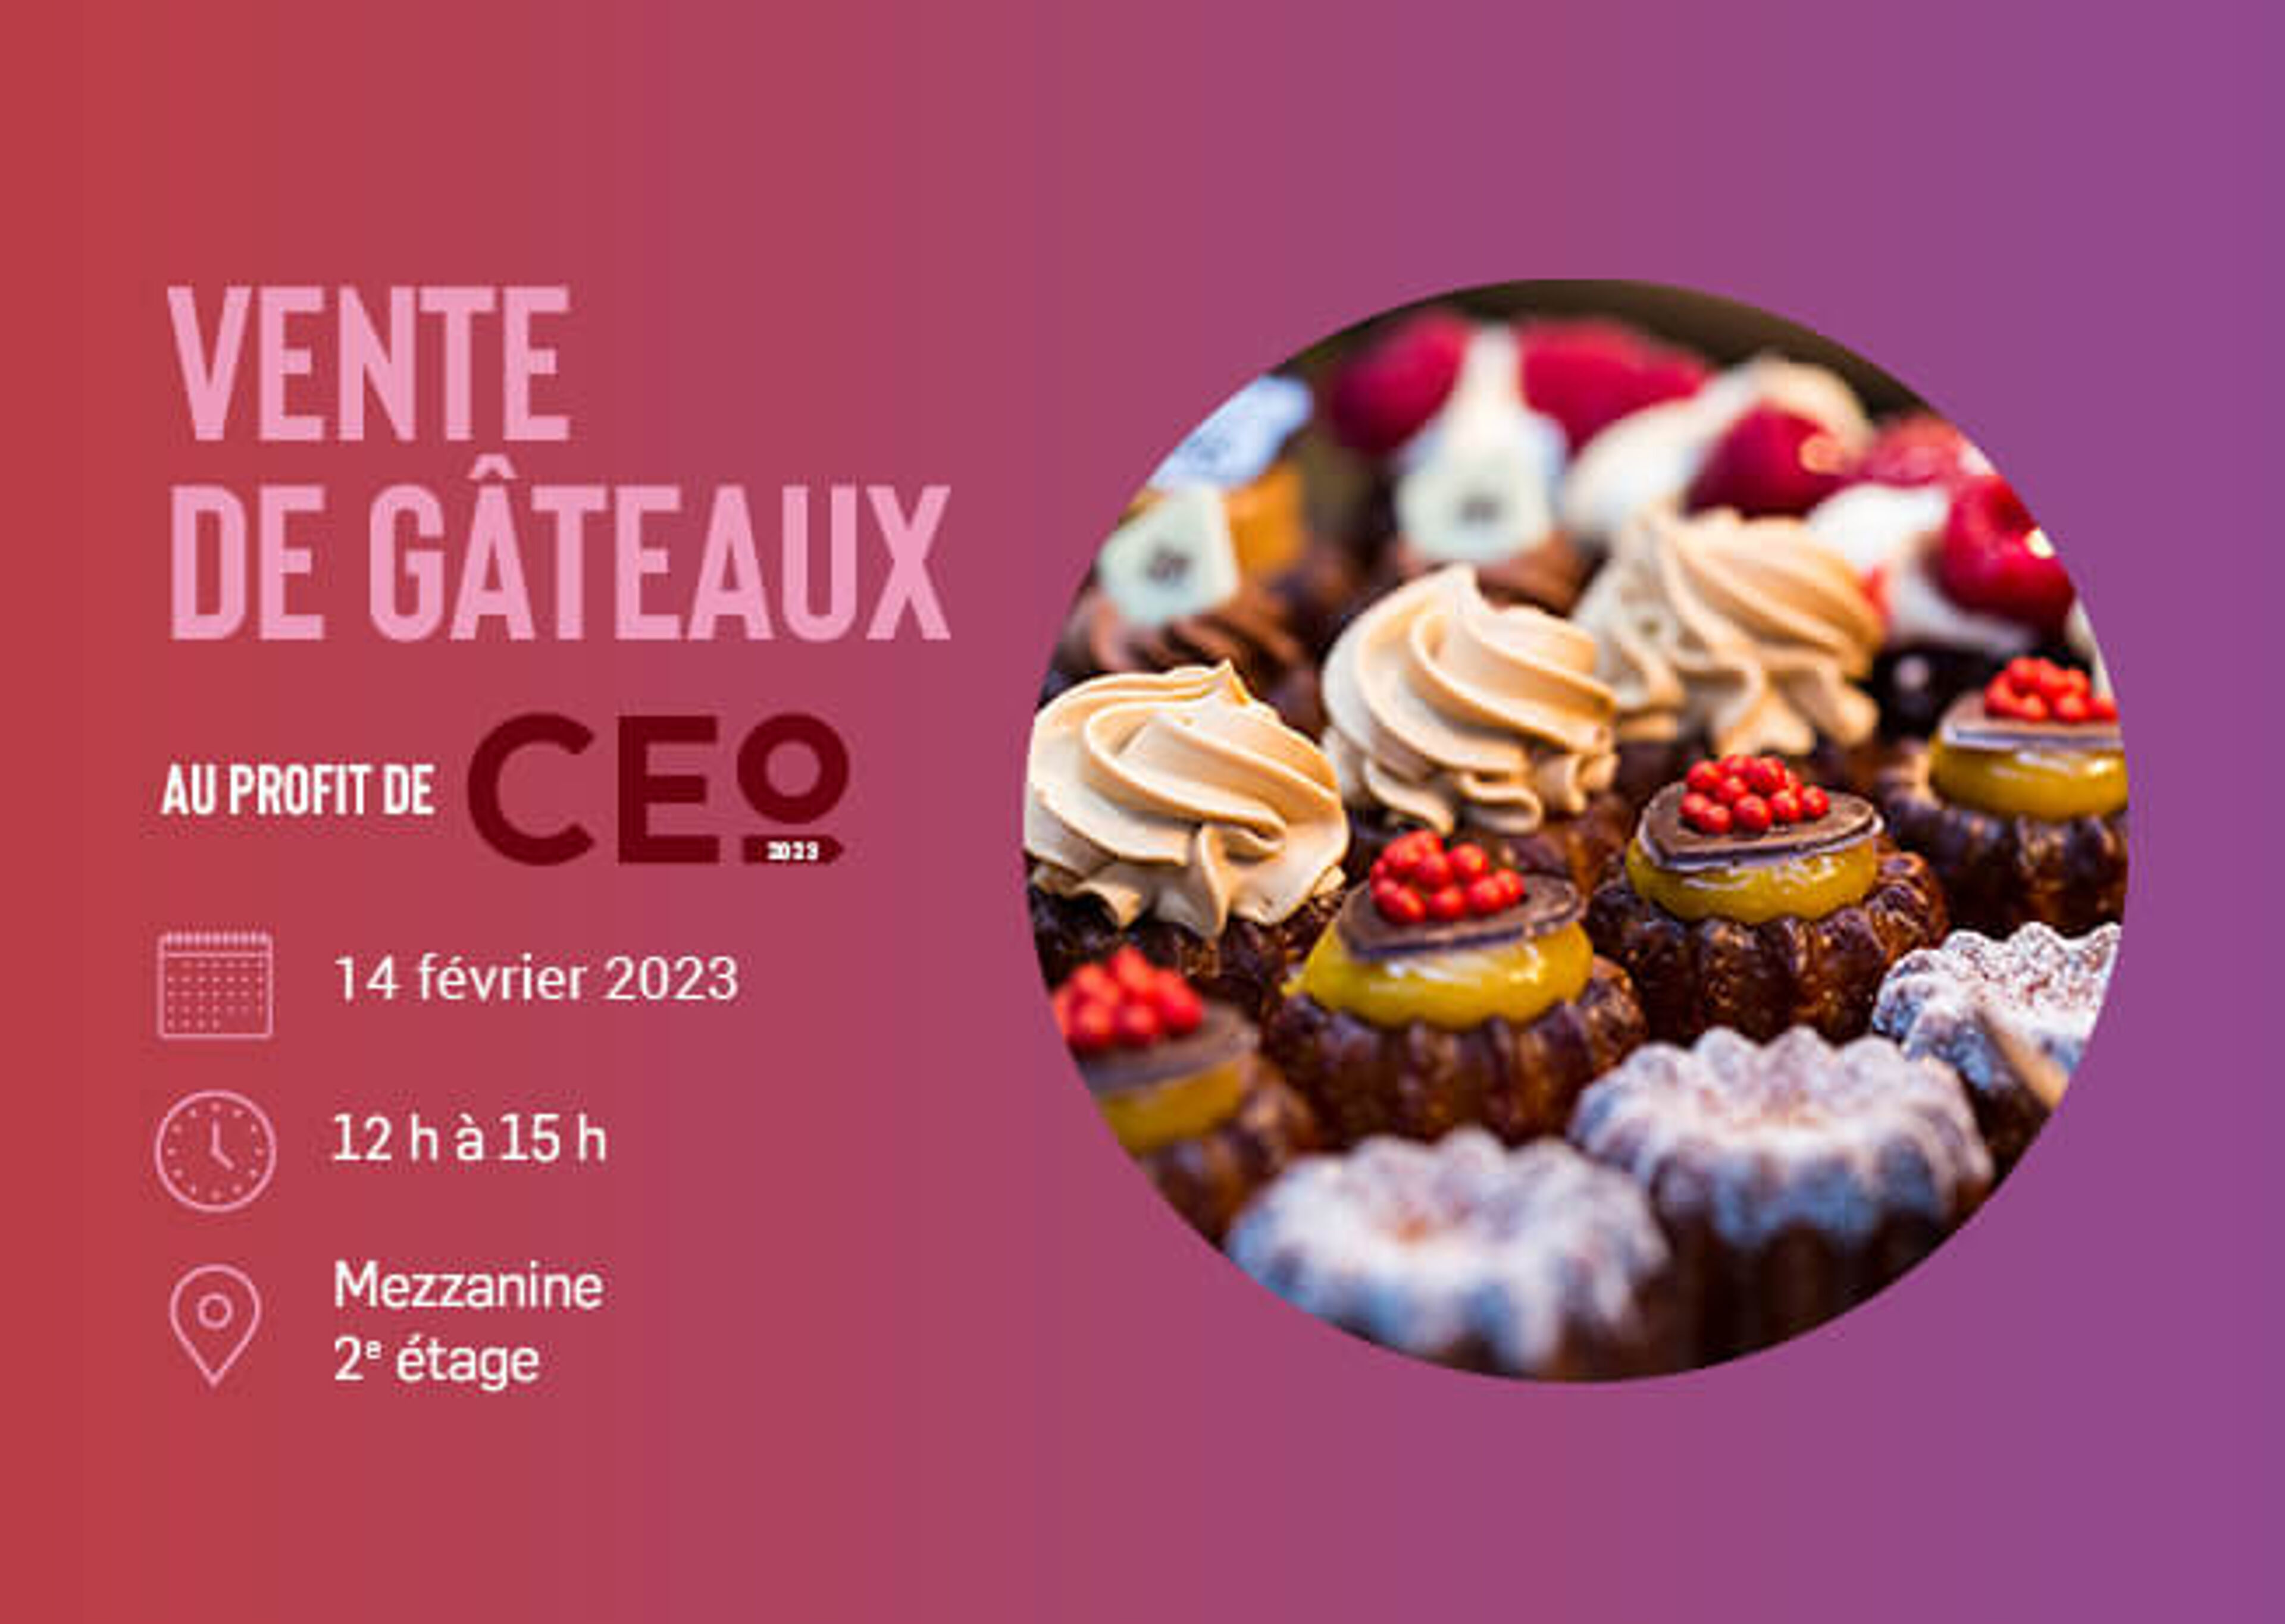 Un flyer pour un événement Cake Sale CEO le 14 février 2023, présentant un assortiment de cupcakes décorés, situé à la mezzanine 2ème étage.